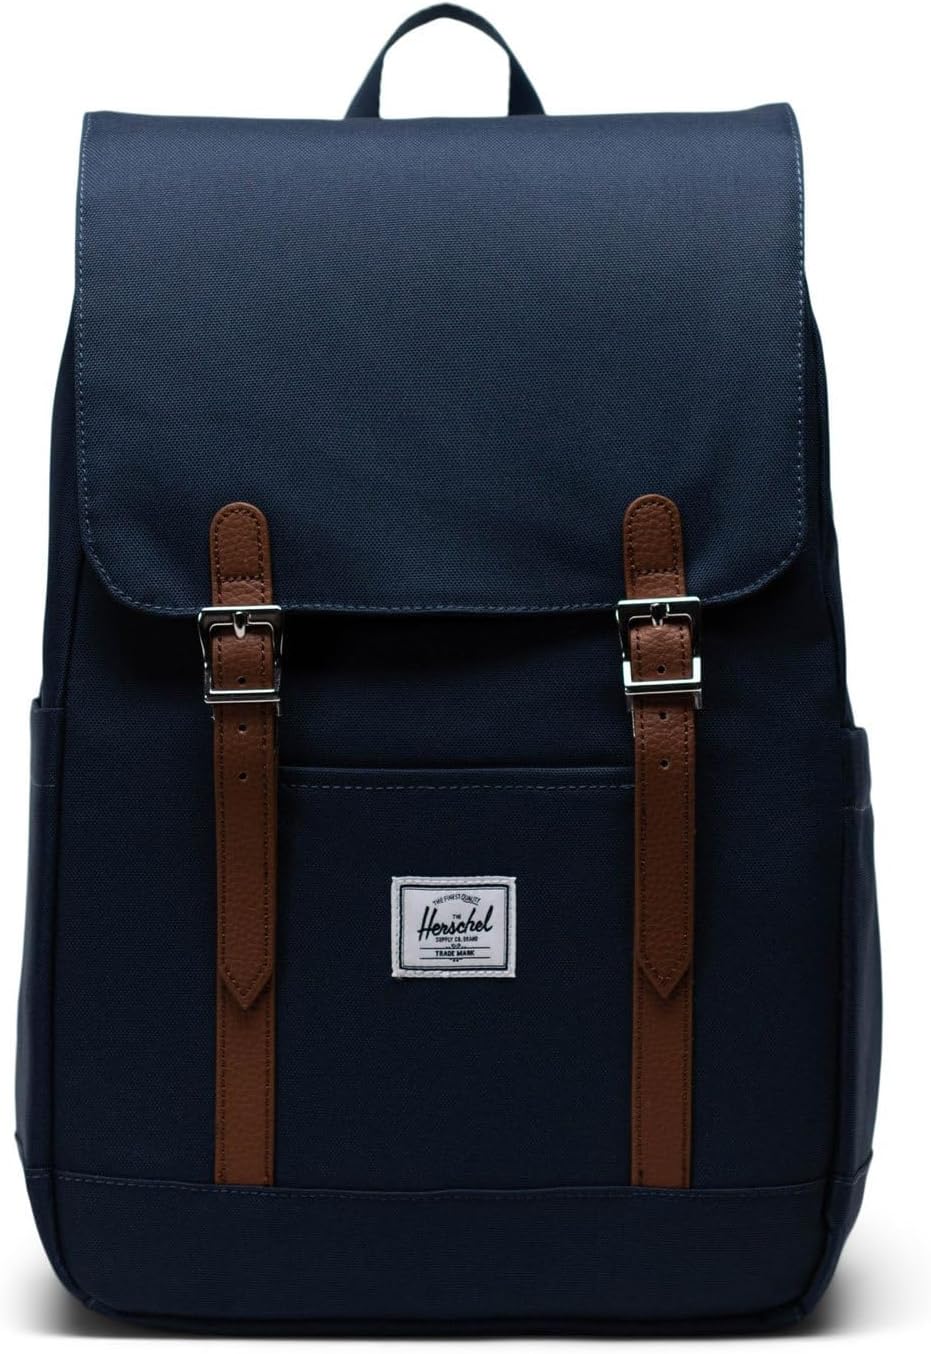 Рюкзак Retreat Small Backpack Herschel Supply Co., темно-синий